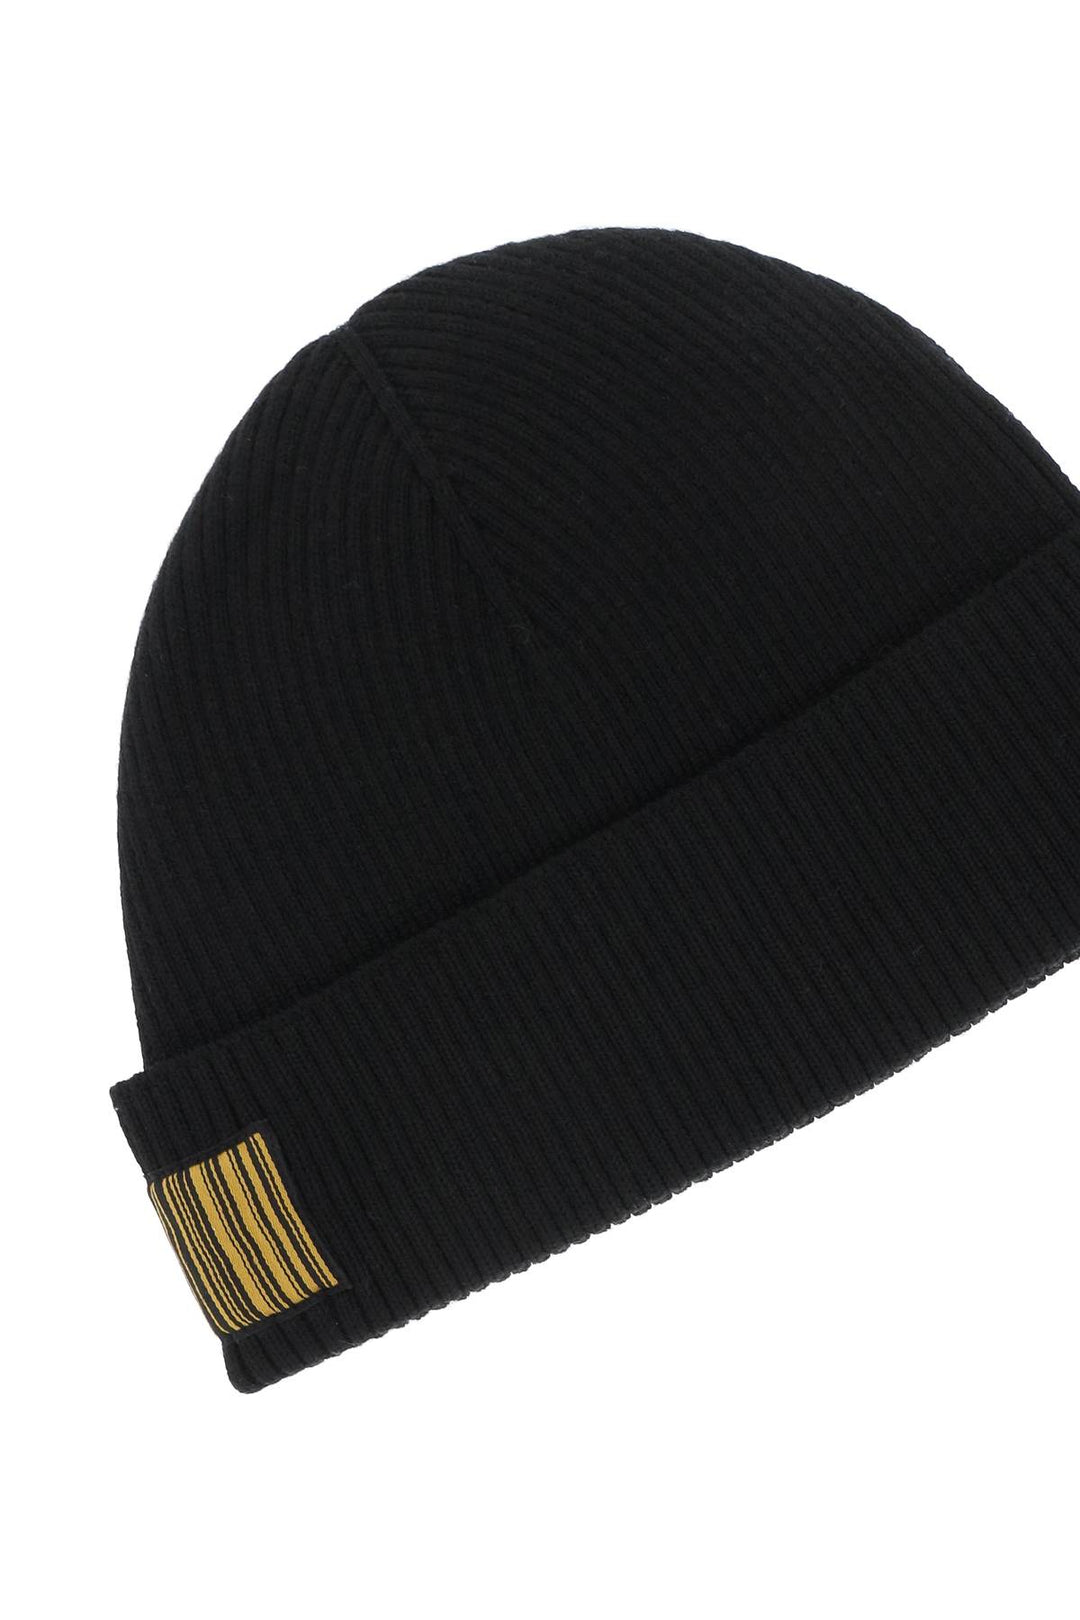 Vtmnts barcode logo beanie hat-2